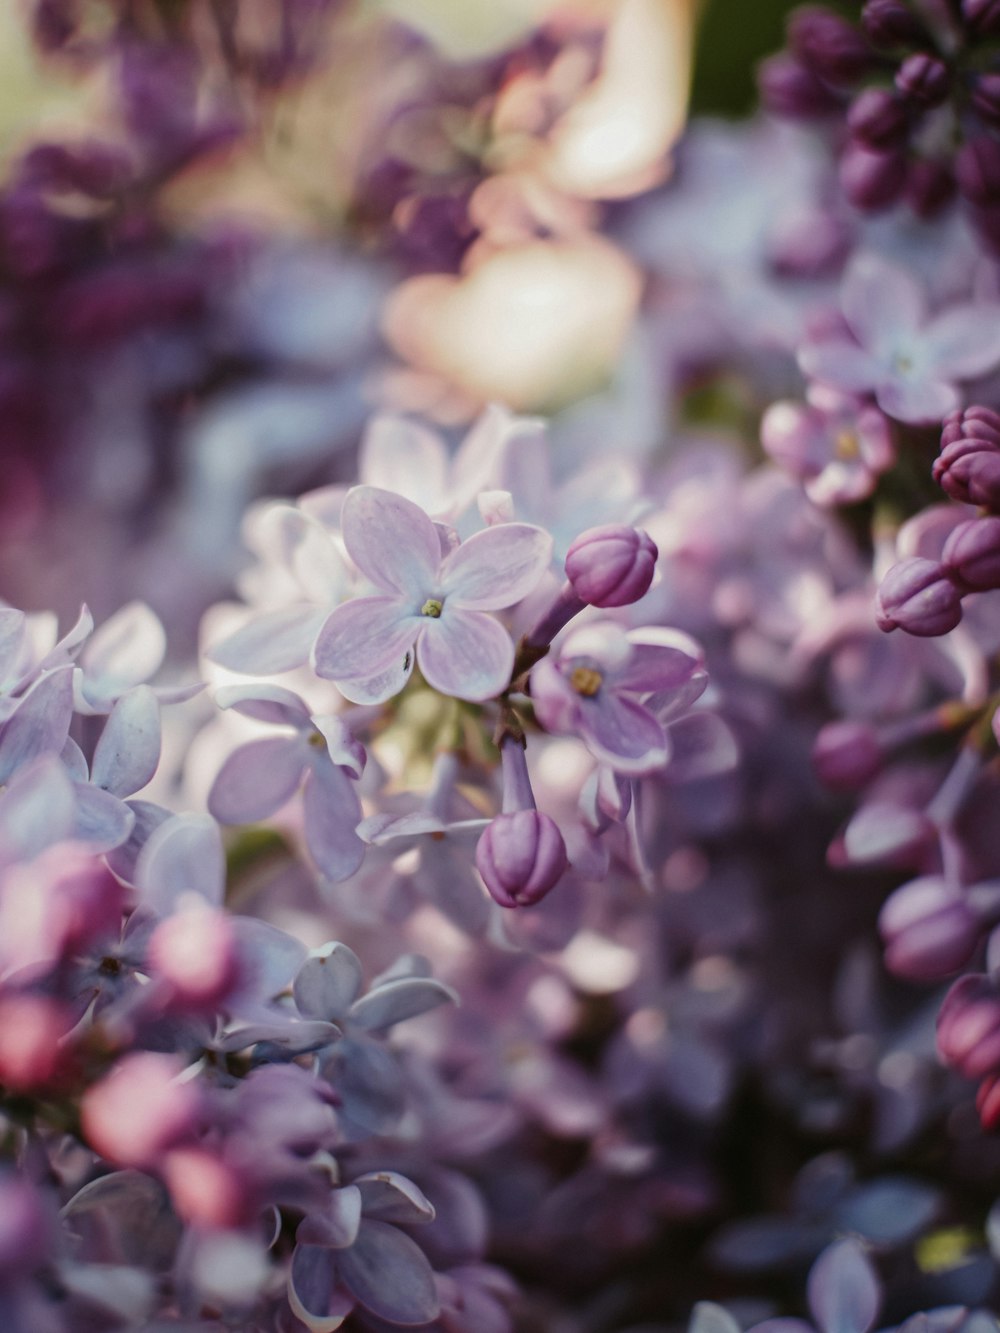 fleurs violettes et blanches dans une lentille à bascule